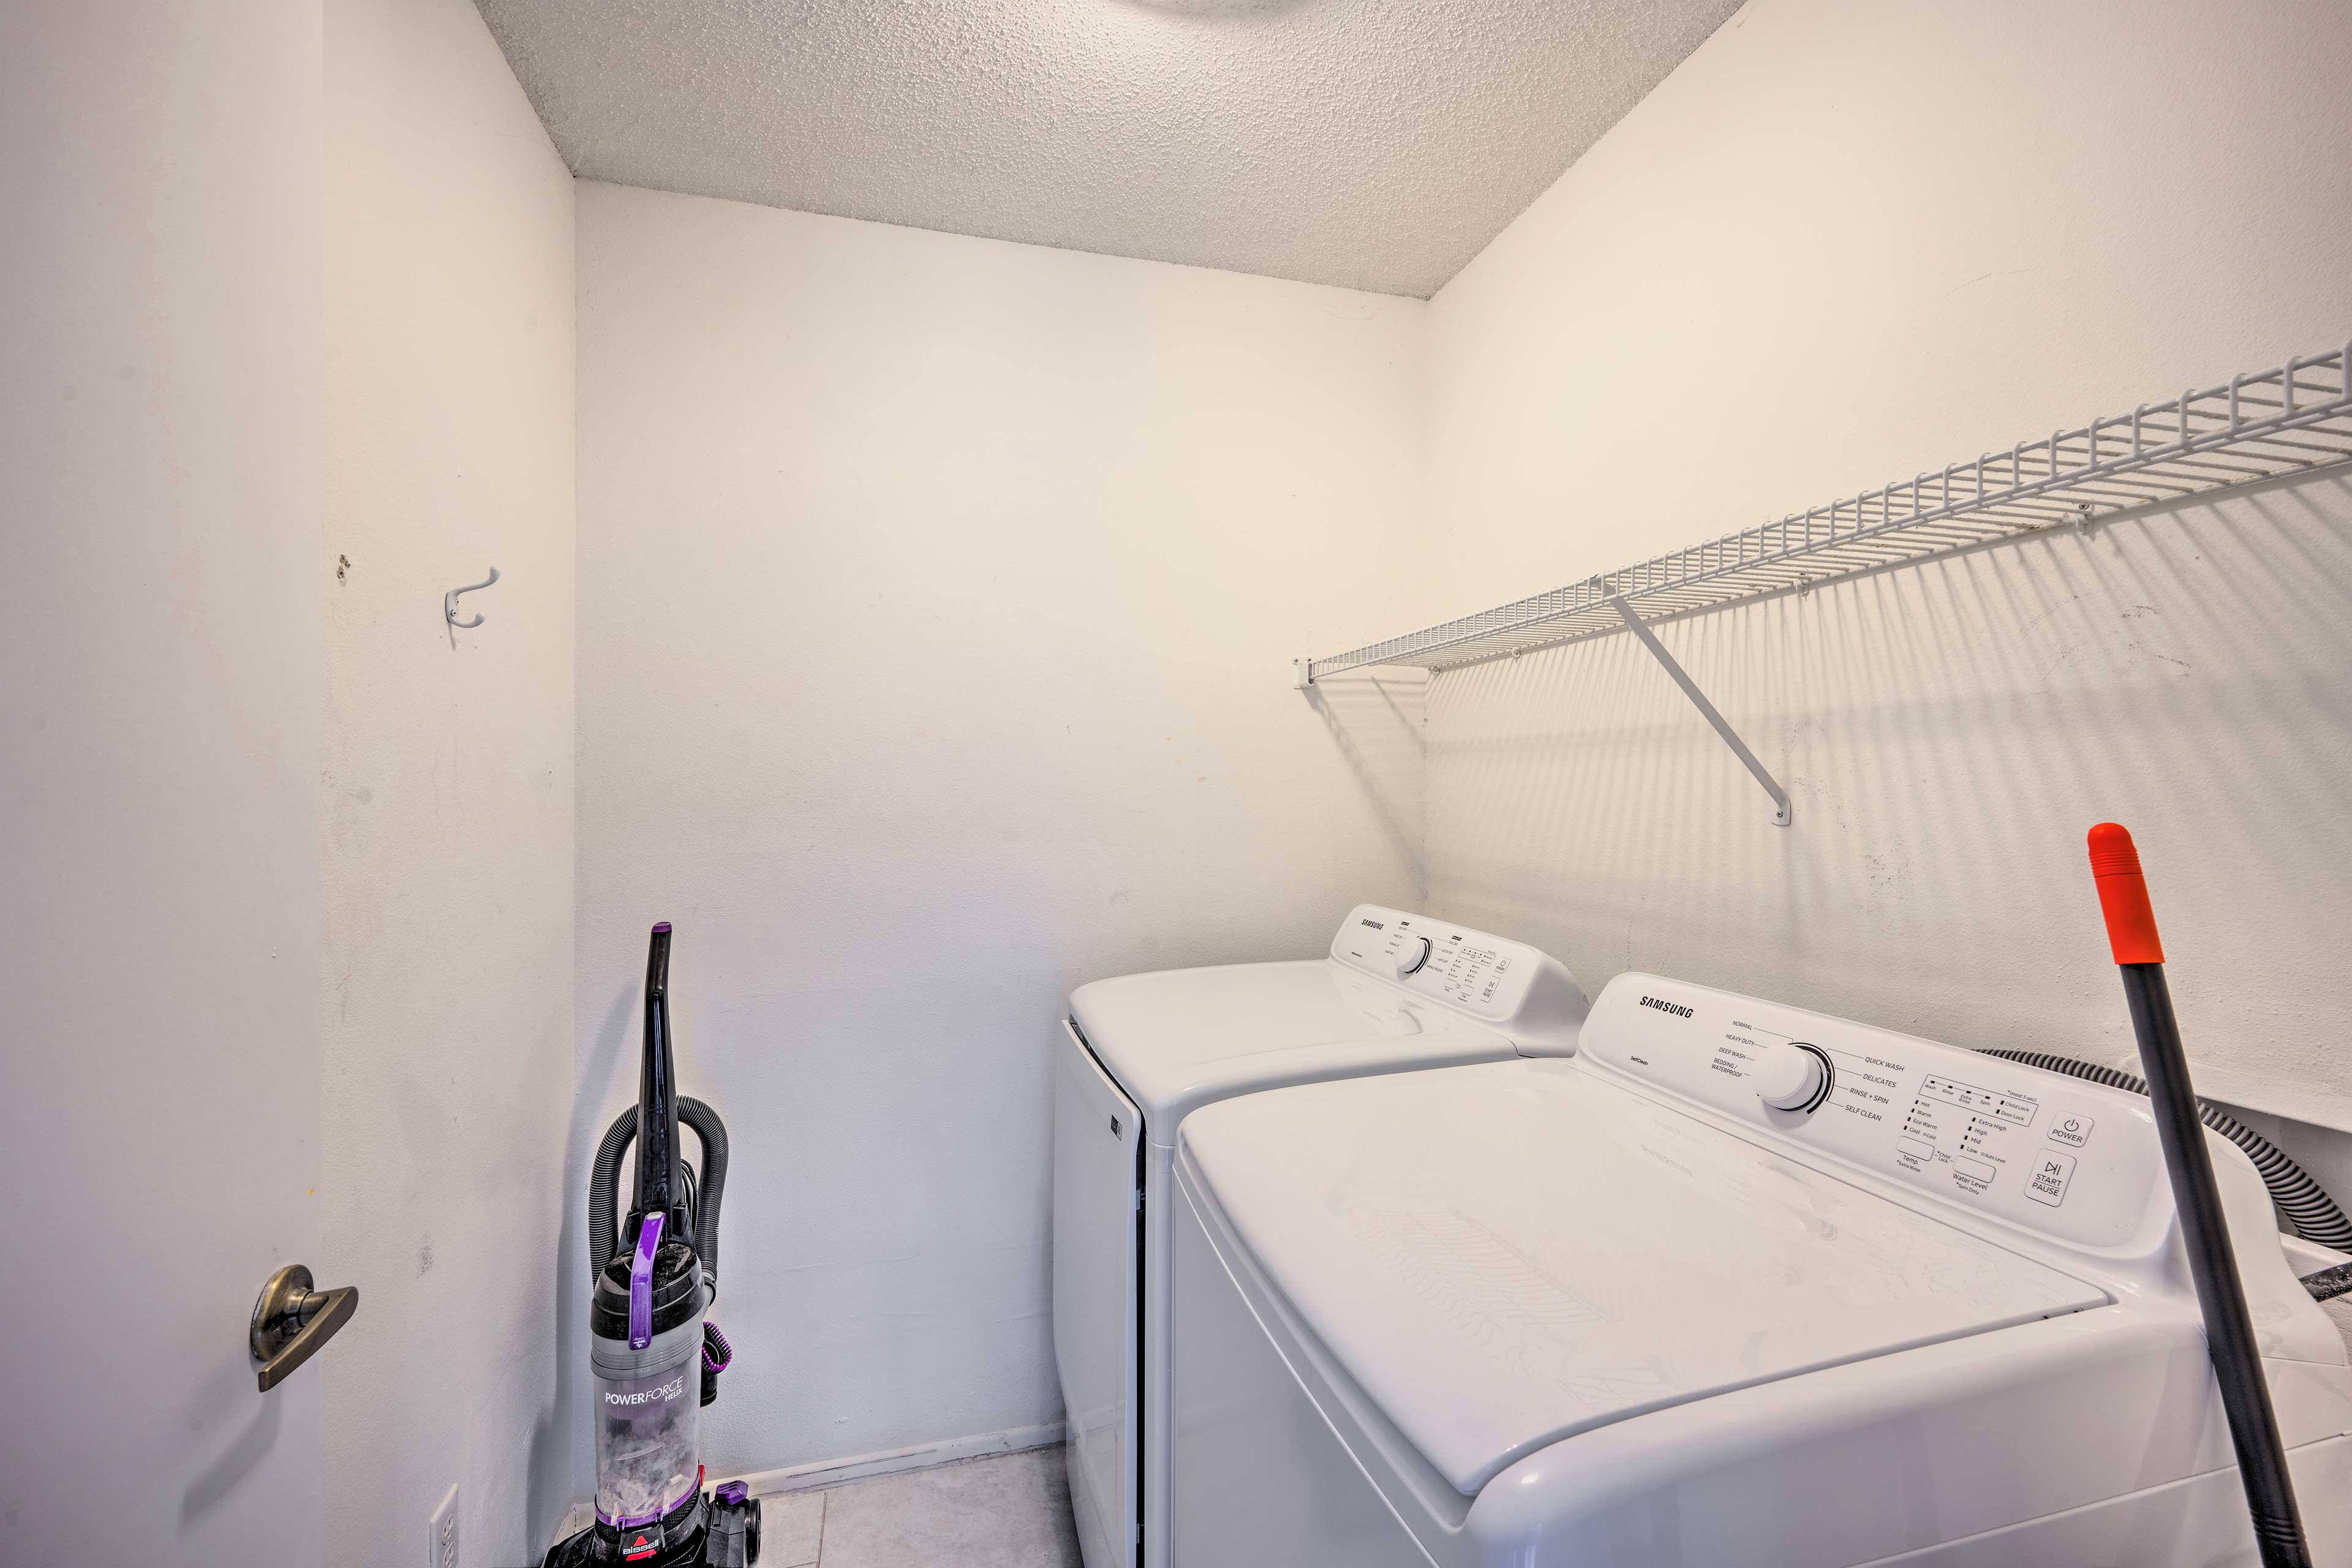 Laundry Room | Washer & Dryer | Iron/Ironing Board